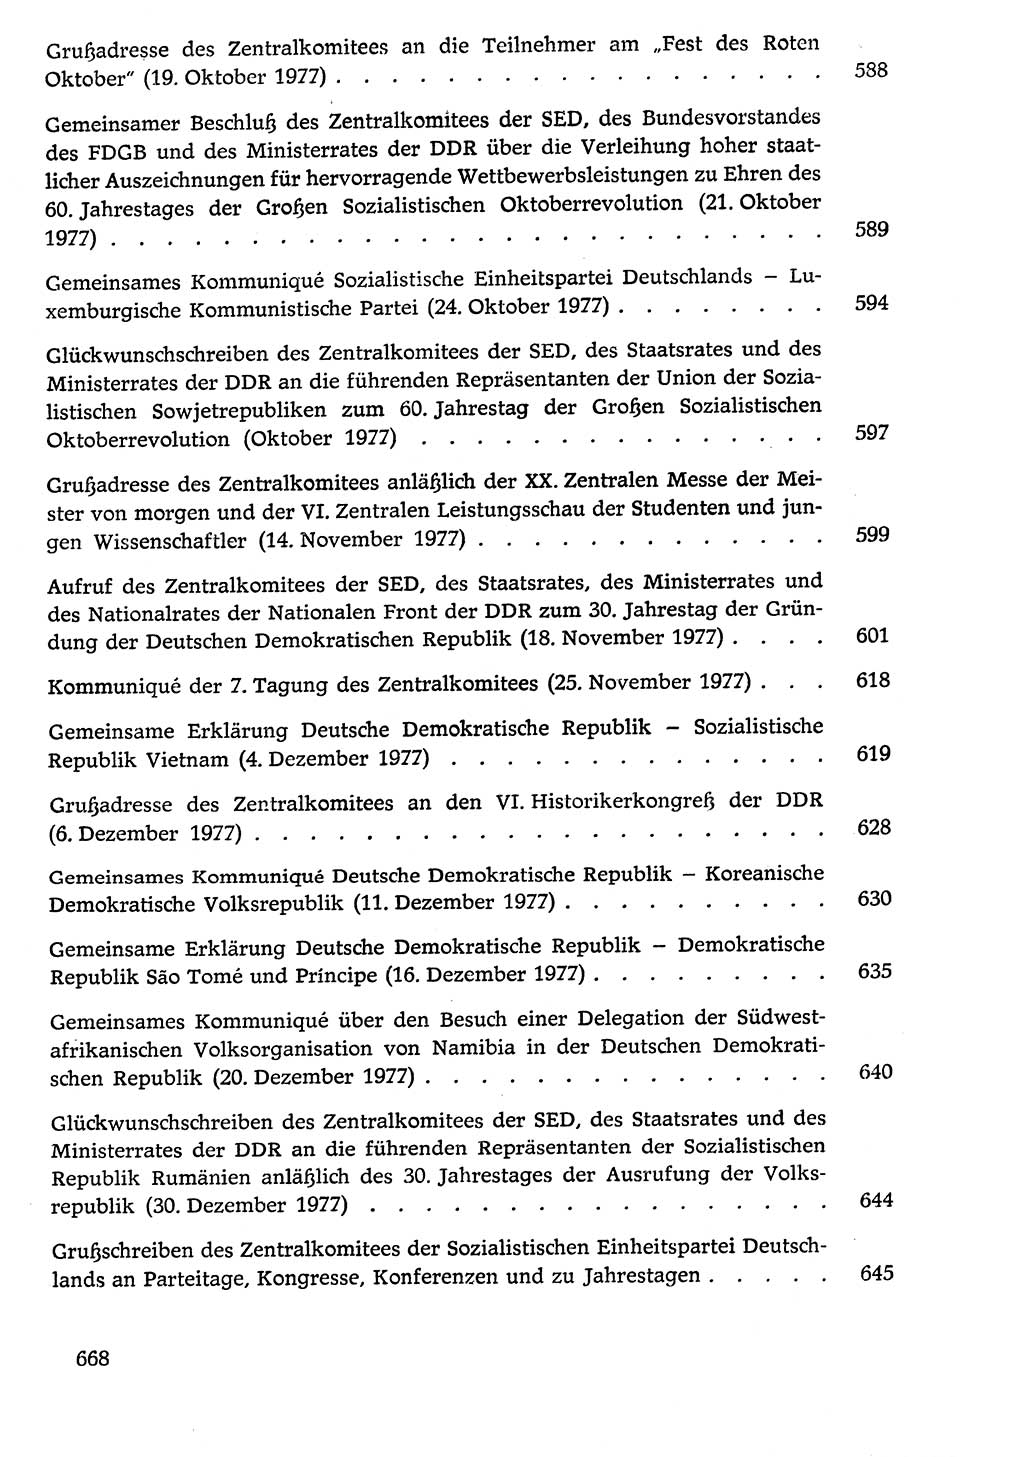 Dokumente der Sozialistischen Einheitspartei Deutschlands (SED) [Deutsche Demokratische Republik (DDR)] 1976-1977, Seite 668 (Dok. SED DDR 1976-1977, S. 668)